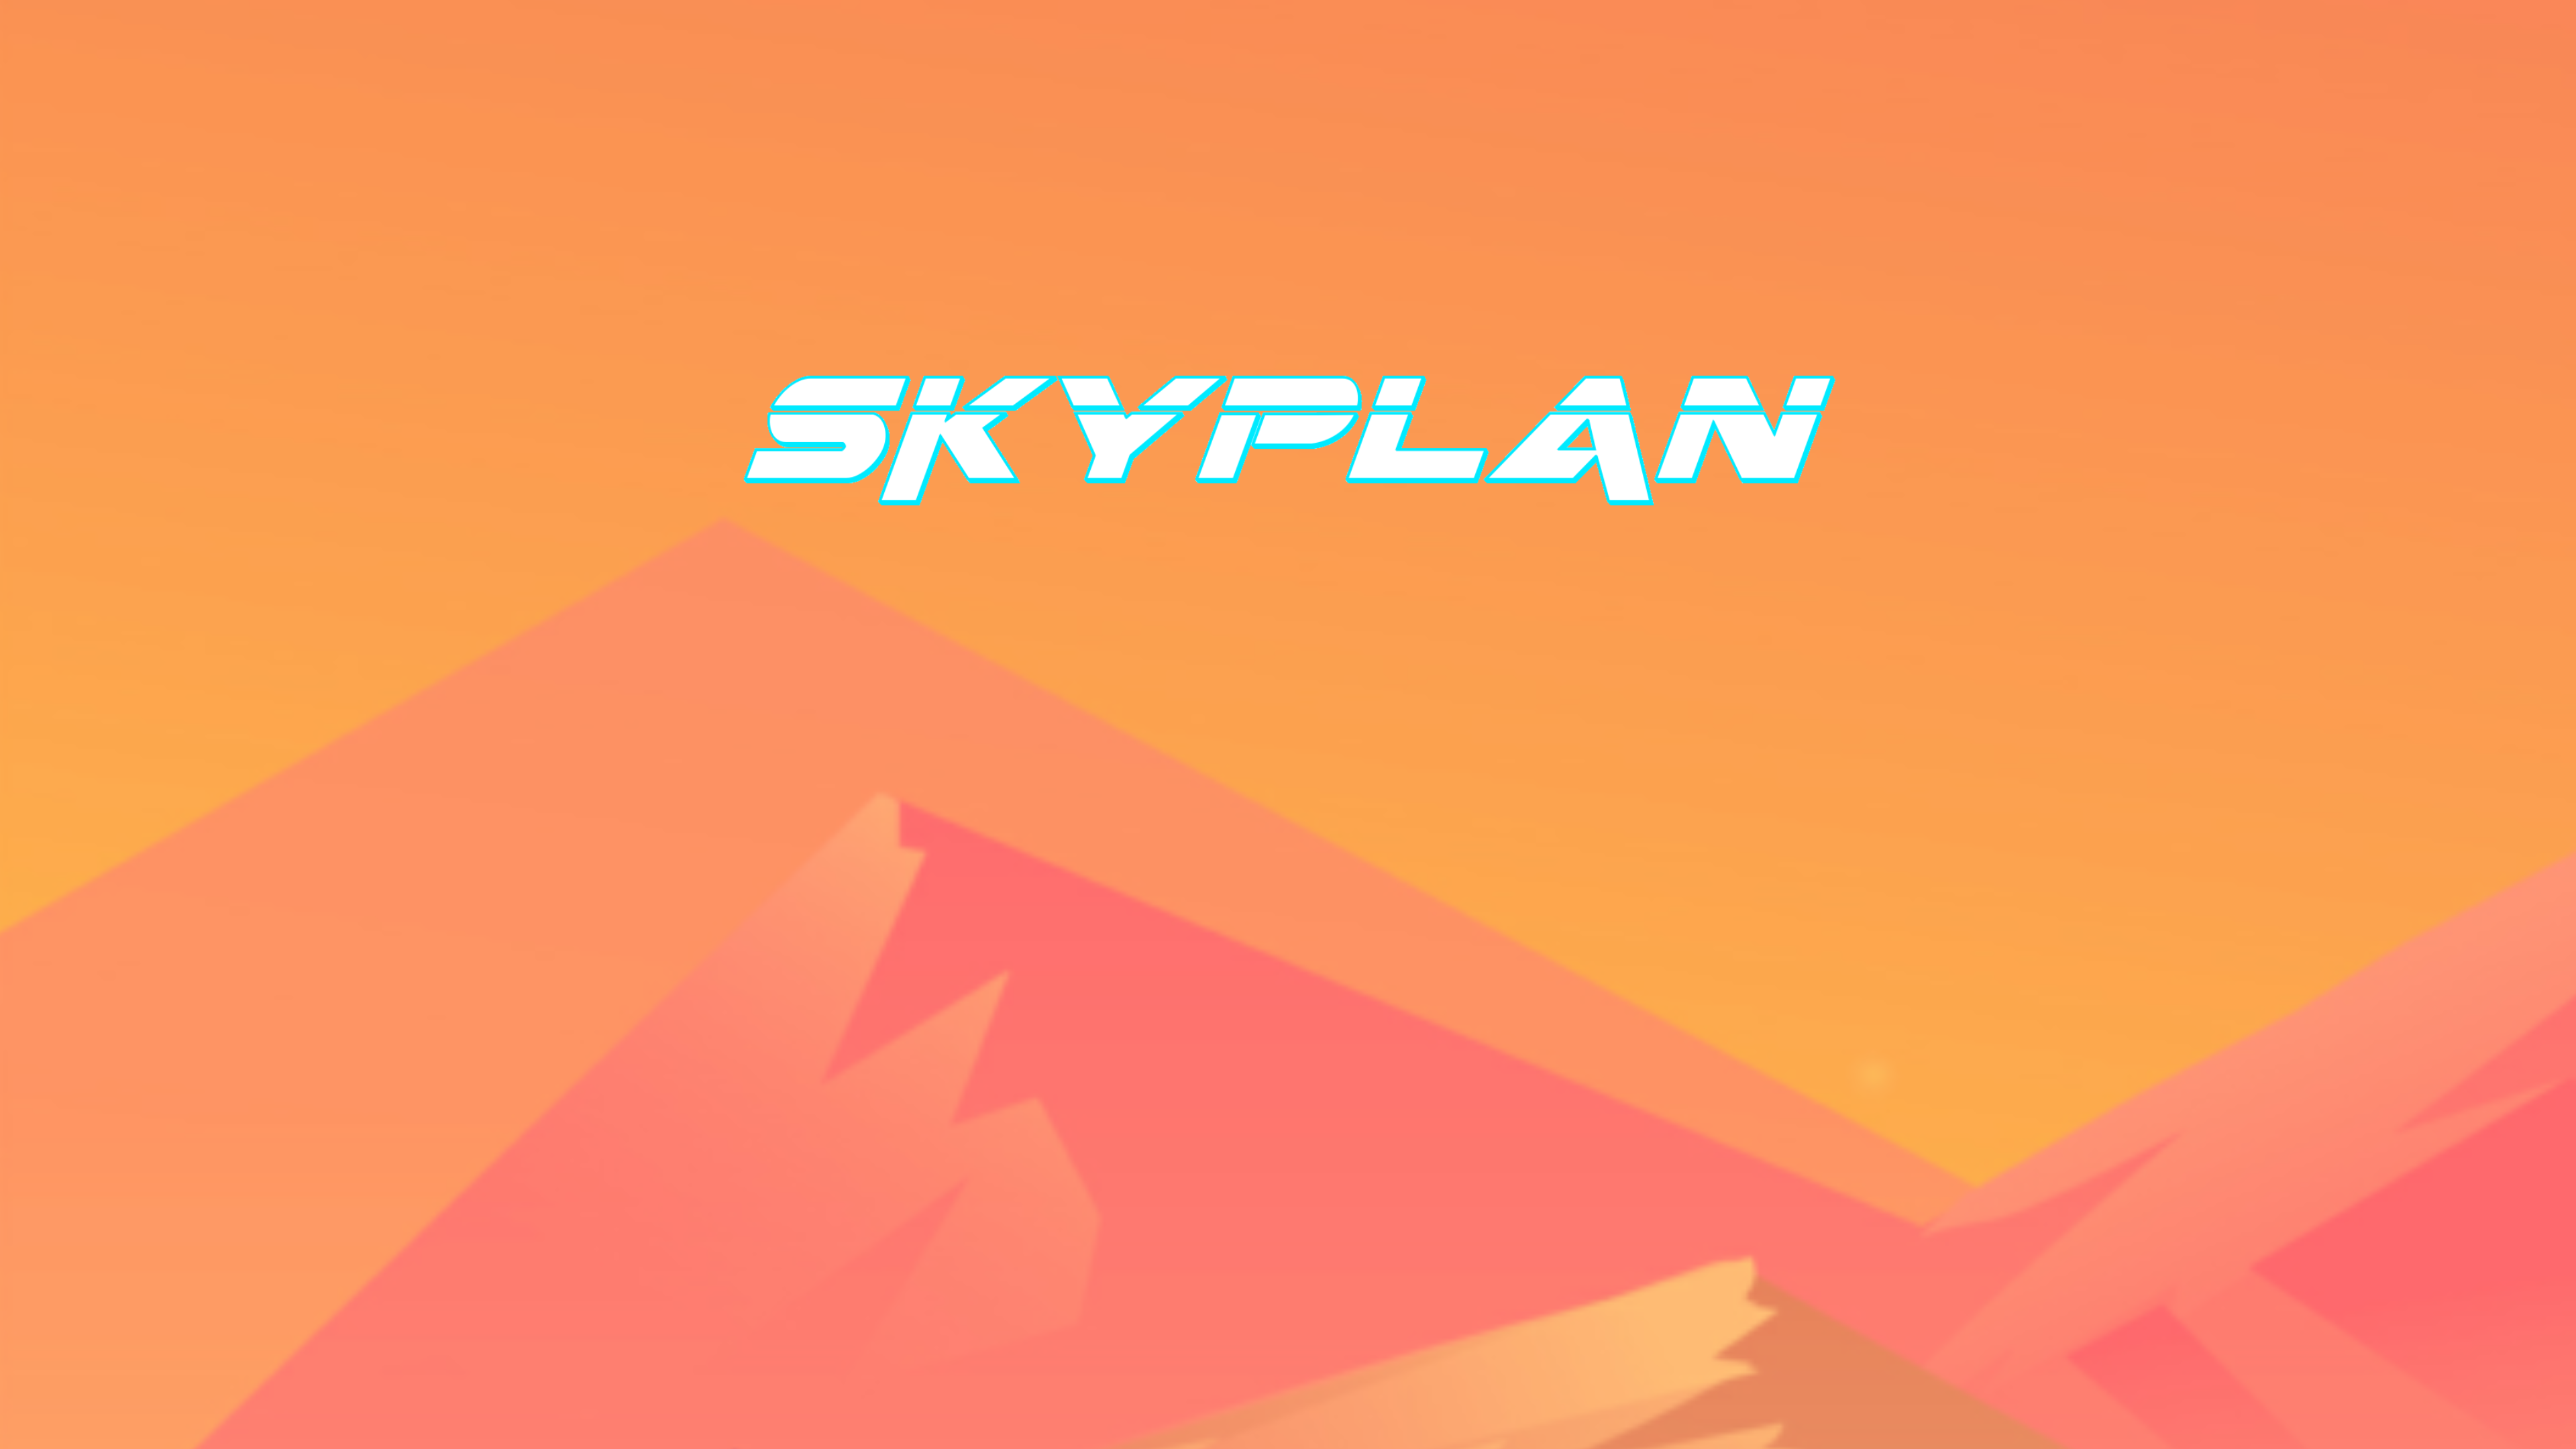 Skyplan